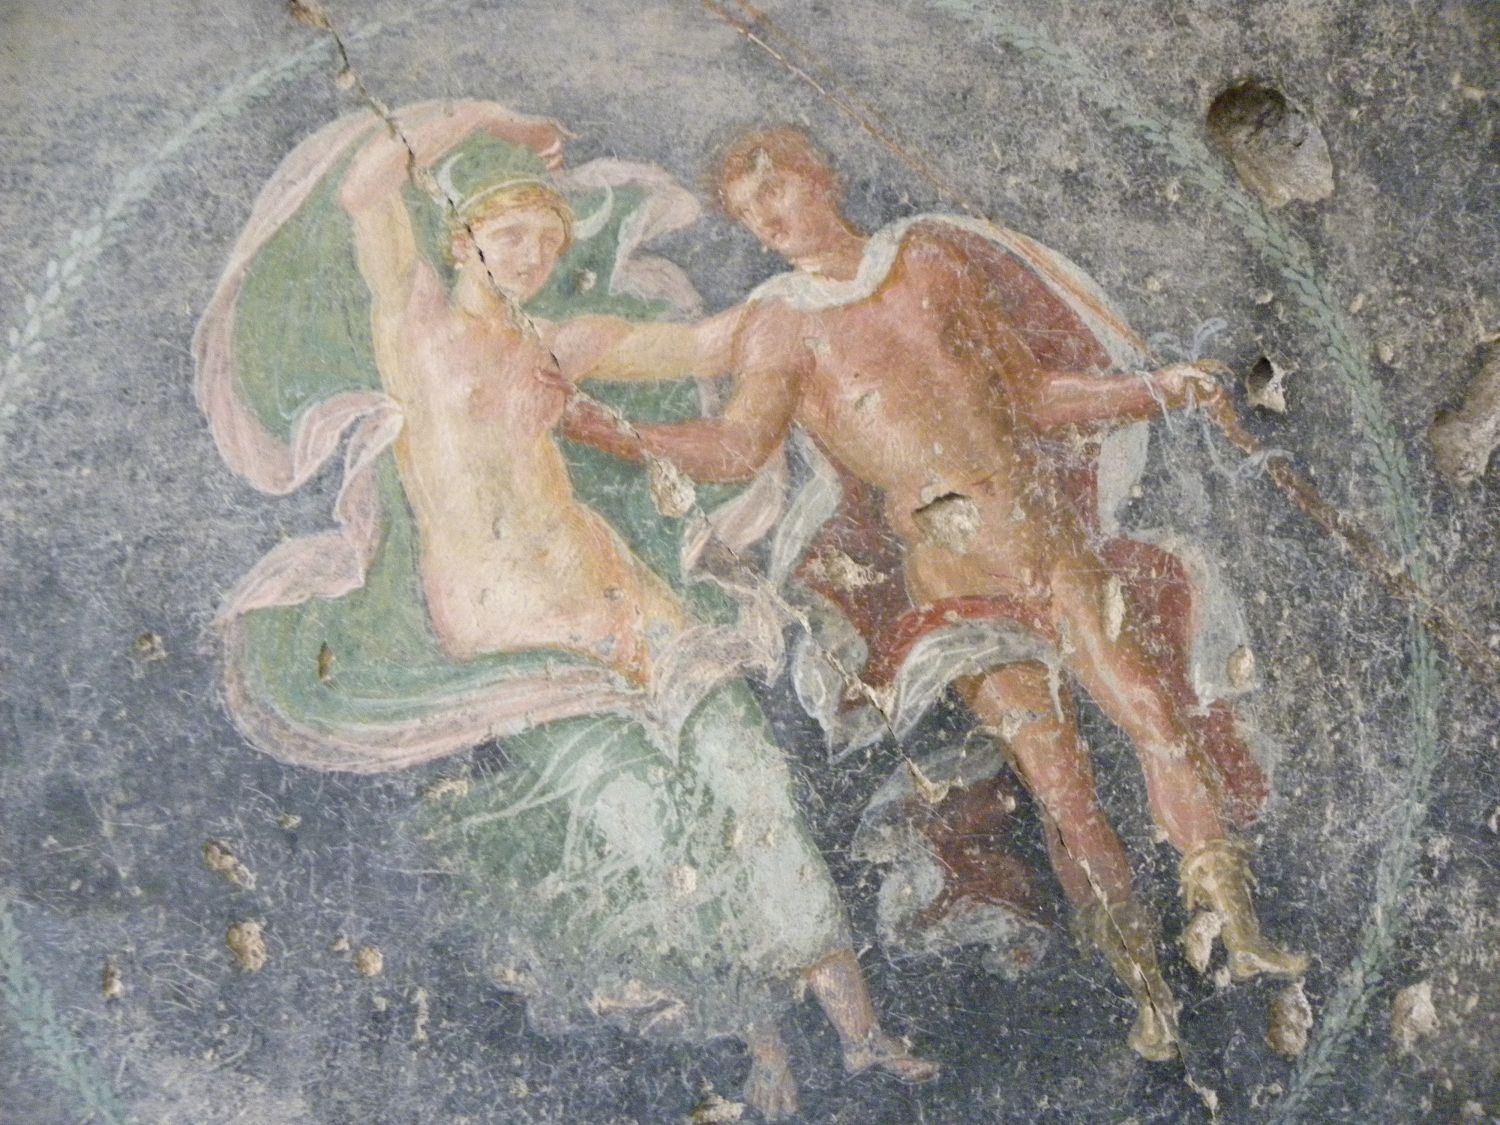 Scavi di Pompei, via dell’Abbondanza. Dal 1 giugno 2010 al via le visite